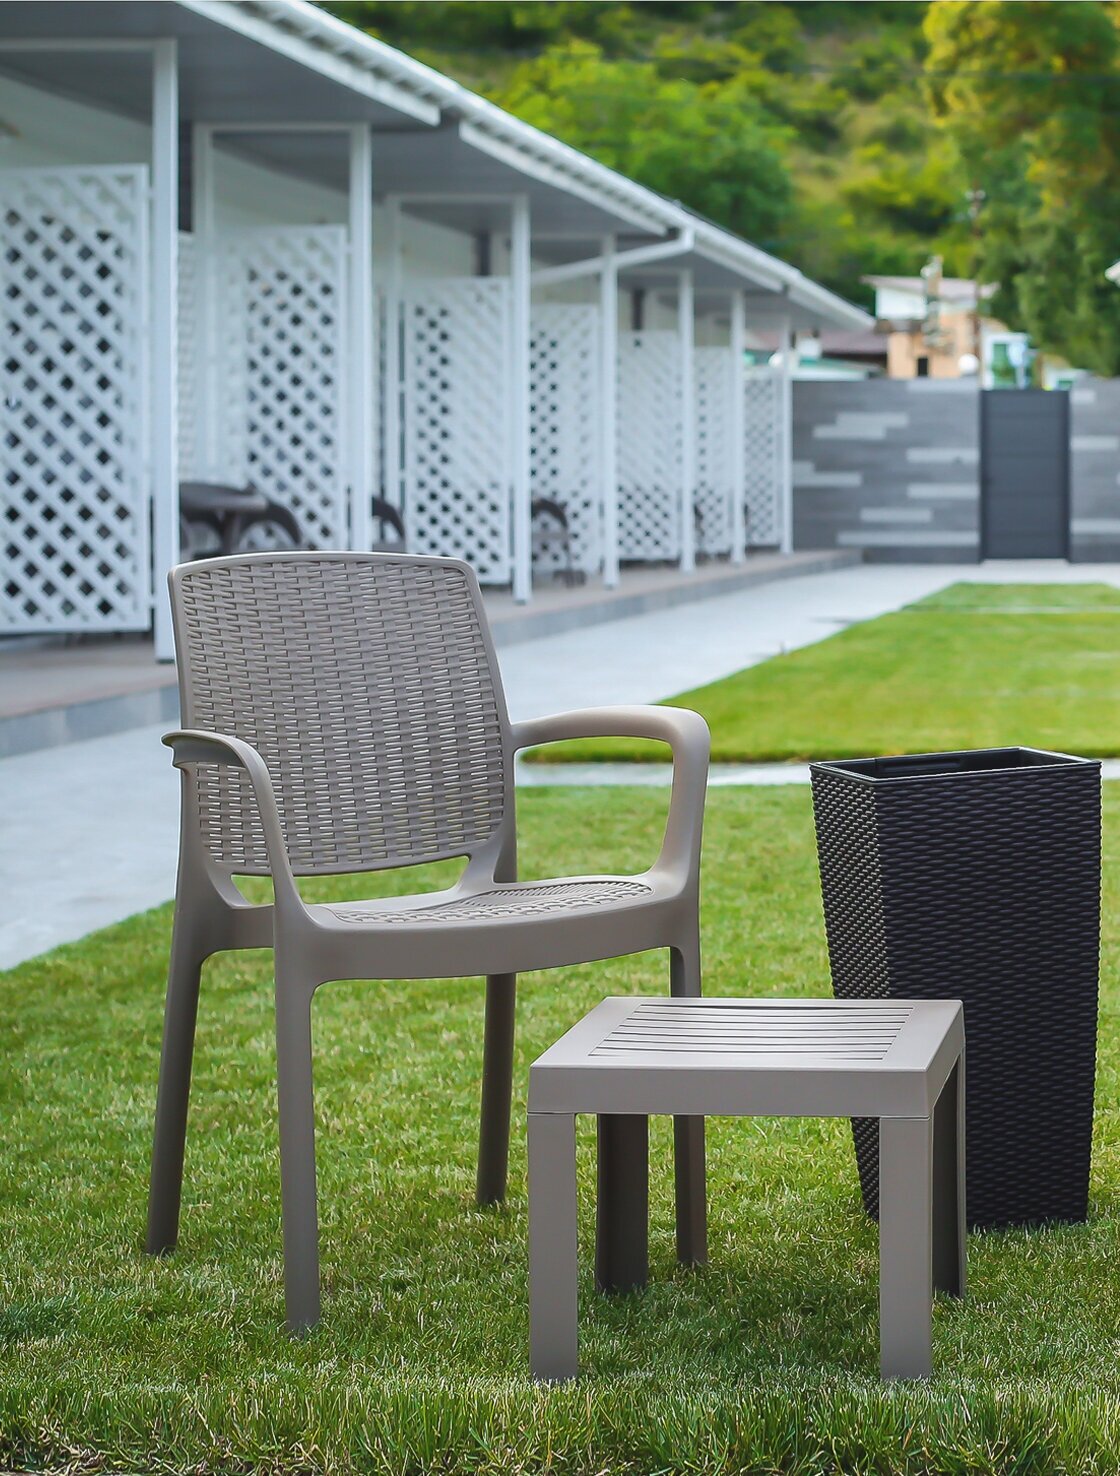 Столик к шезлонгу пластиковый Elfplast размером 35х40х40, практичный садовый столик съемными ножками